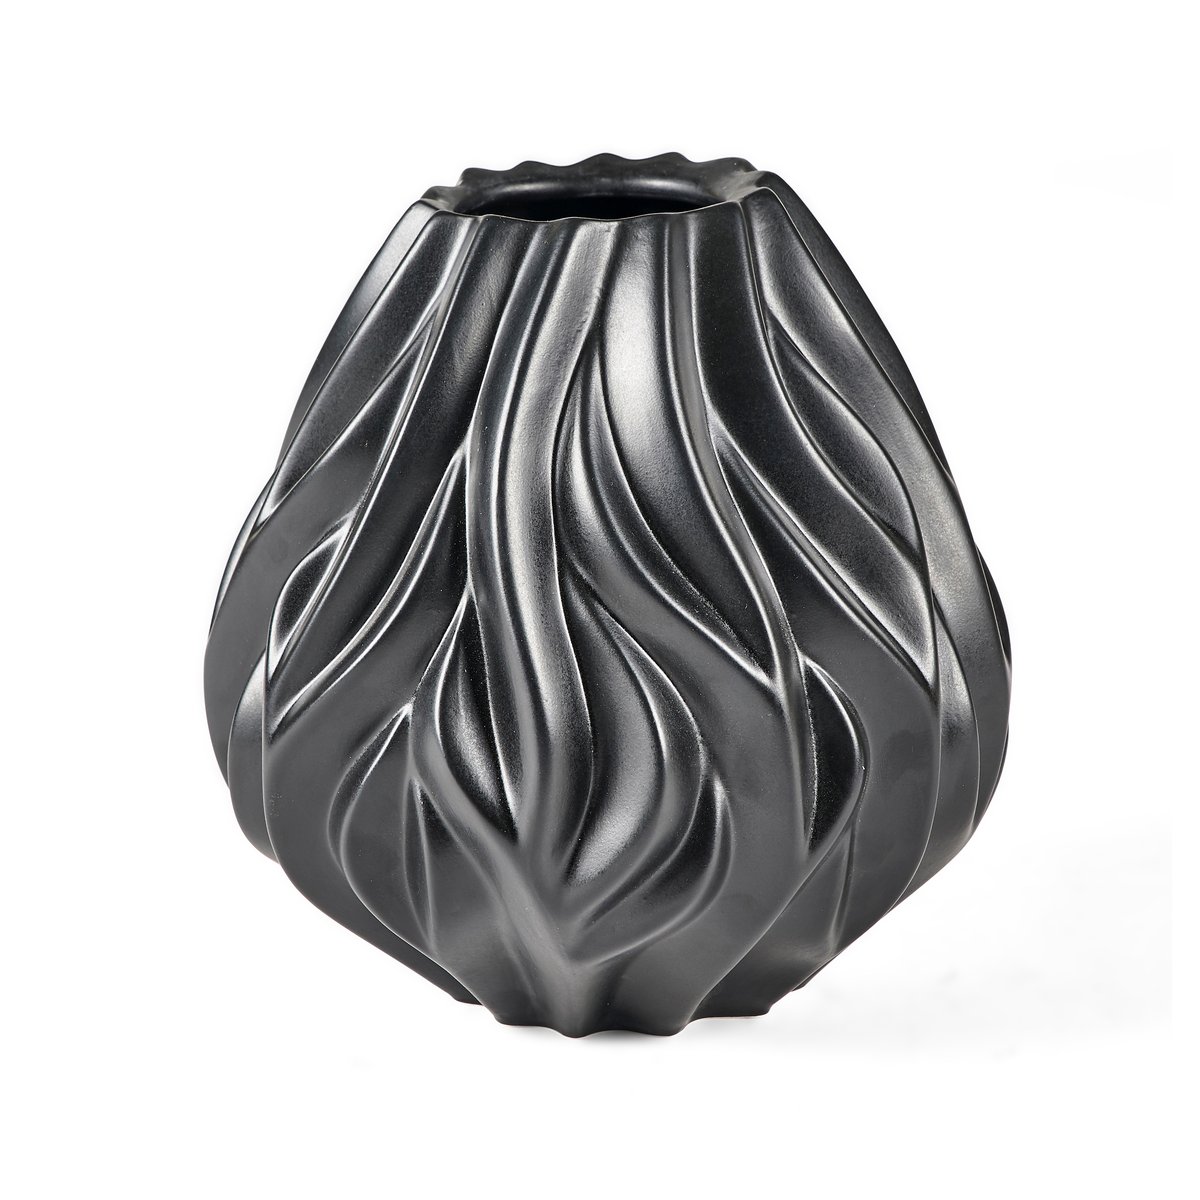 Bilde av Morsø Flame vase 19 cm Svart